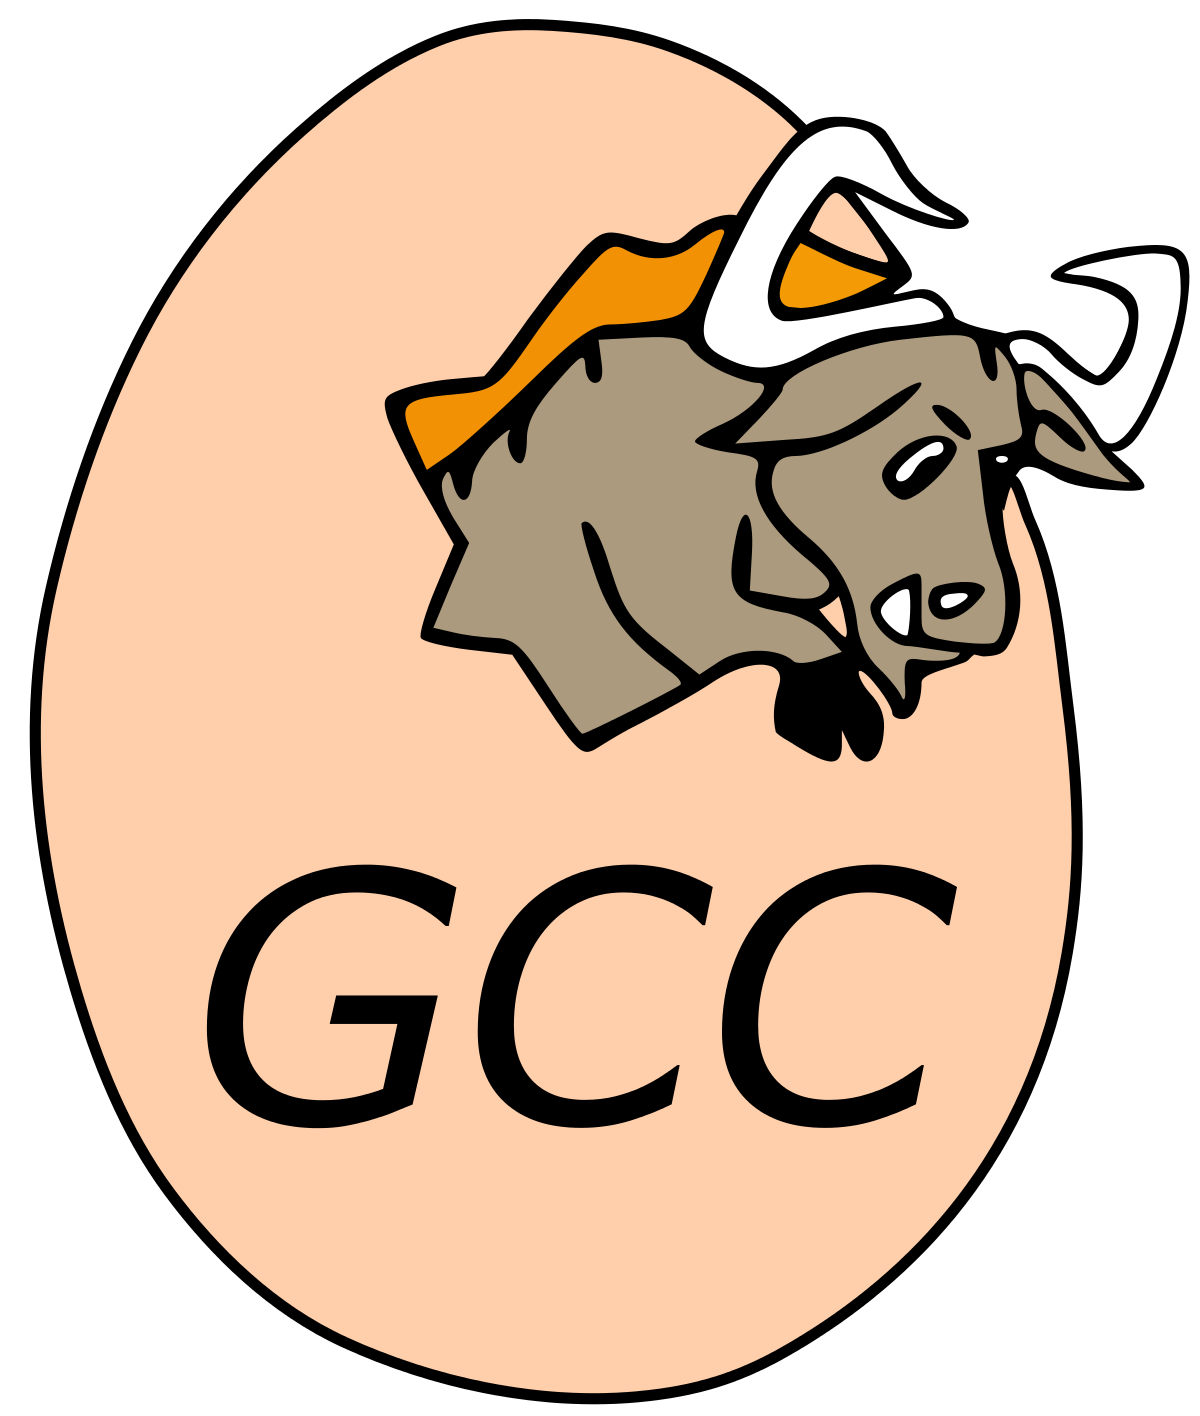 نصب GCC در دبیان